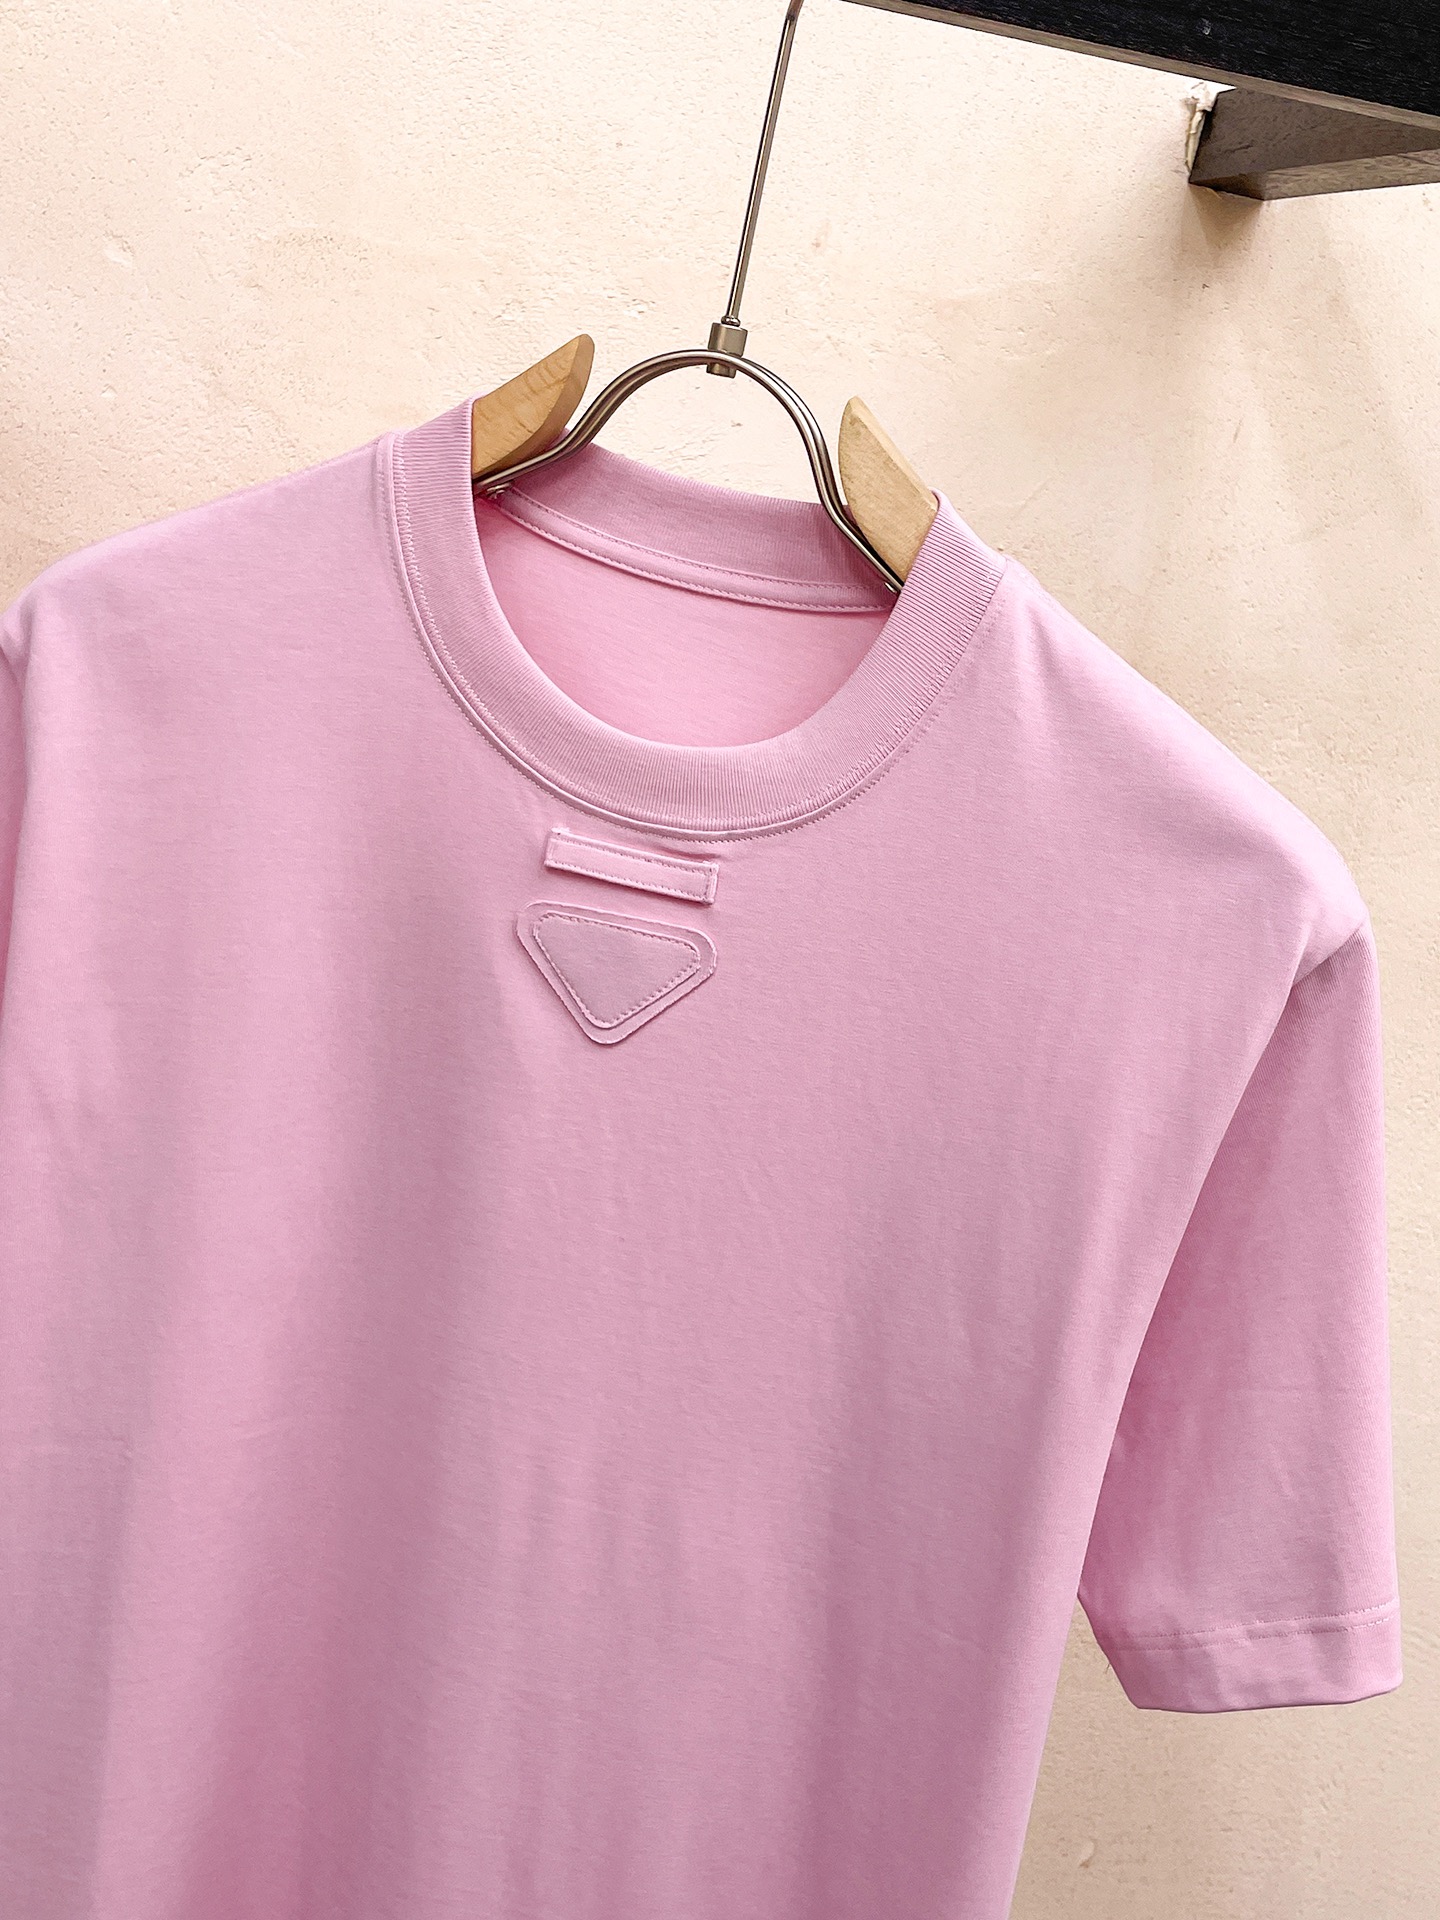 prada の t シャツ激安通販 短袖 ゆったり 純綿 トップス プリント 柔らかい シンプル ピンク_3